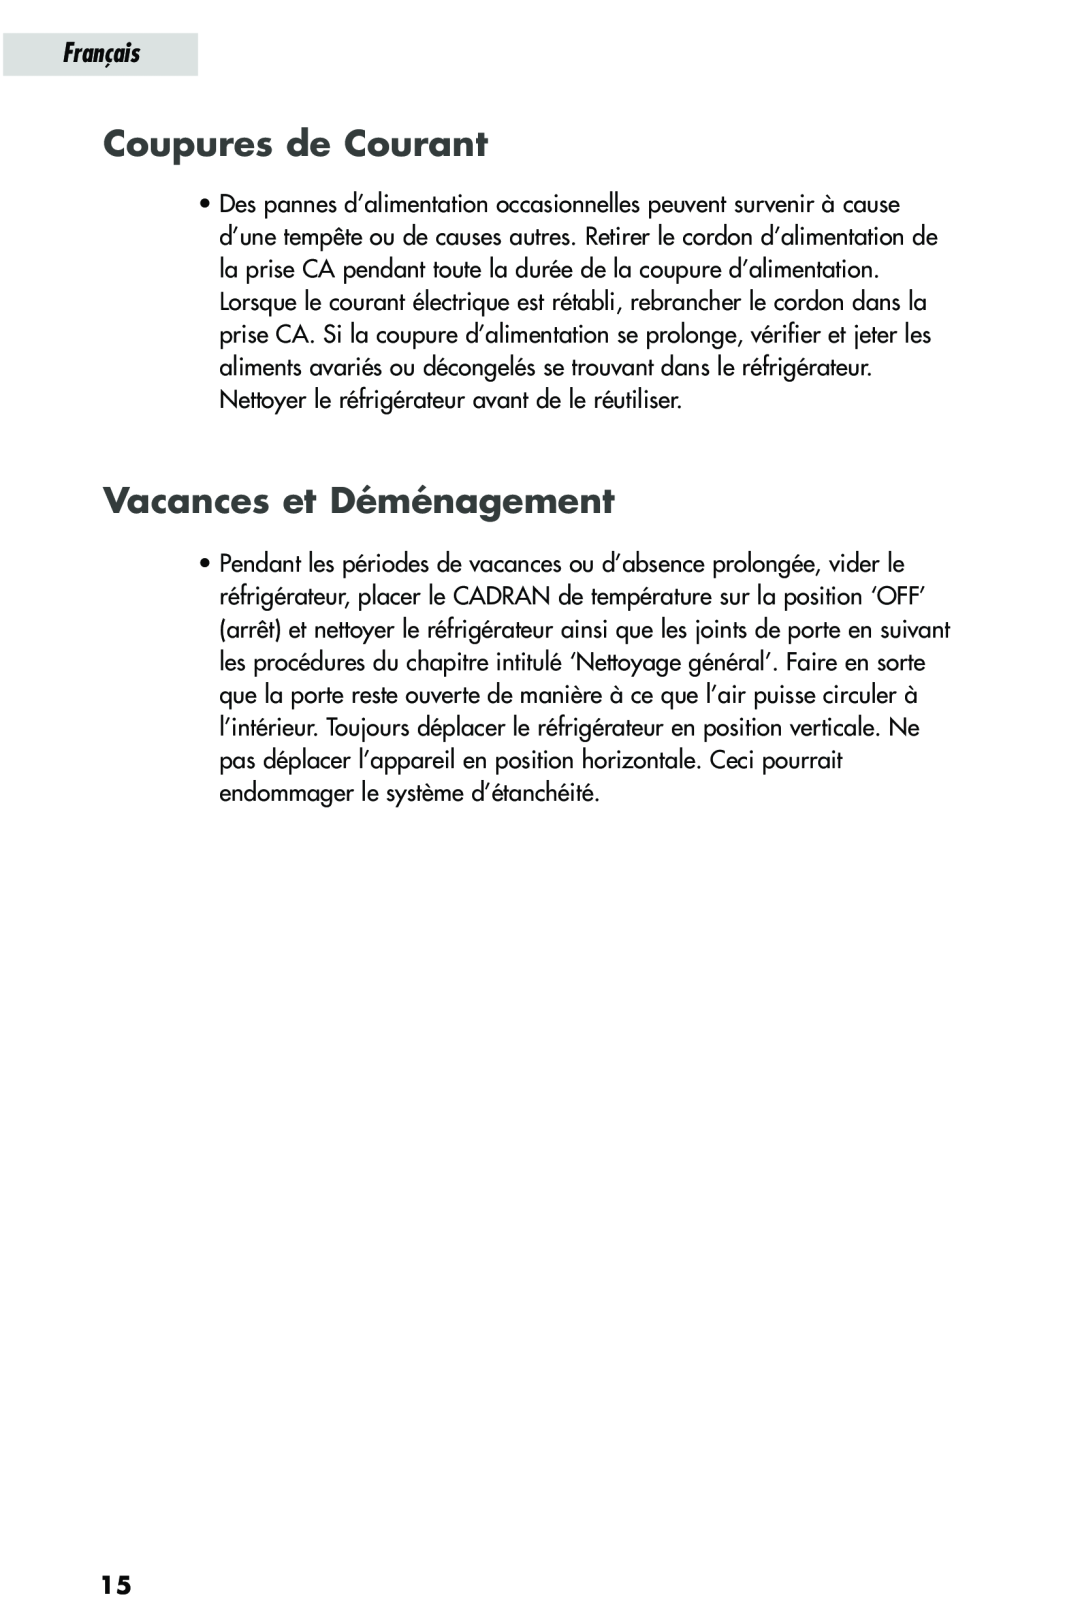 Haier HRQ03WNA, HRQ02WNA user manual Coupures de Courant, Vacances et Déménagement, Français 